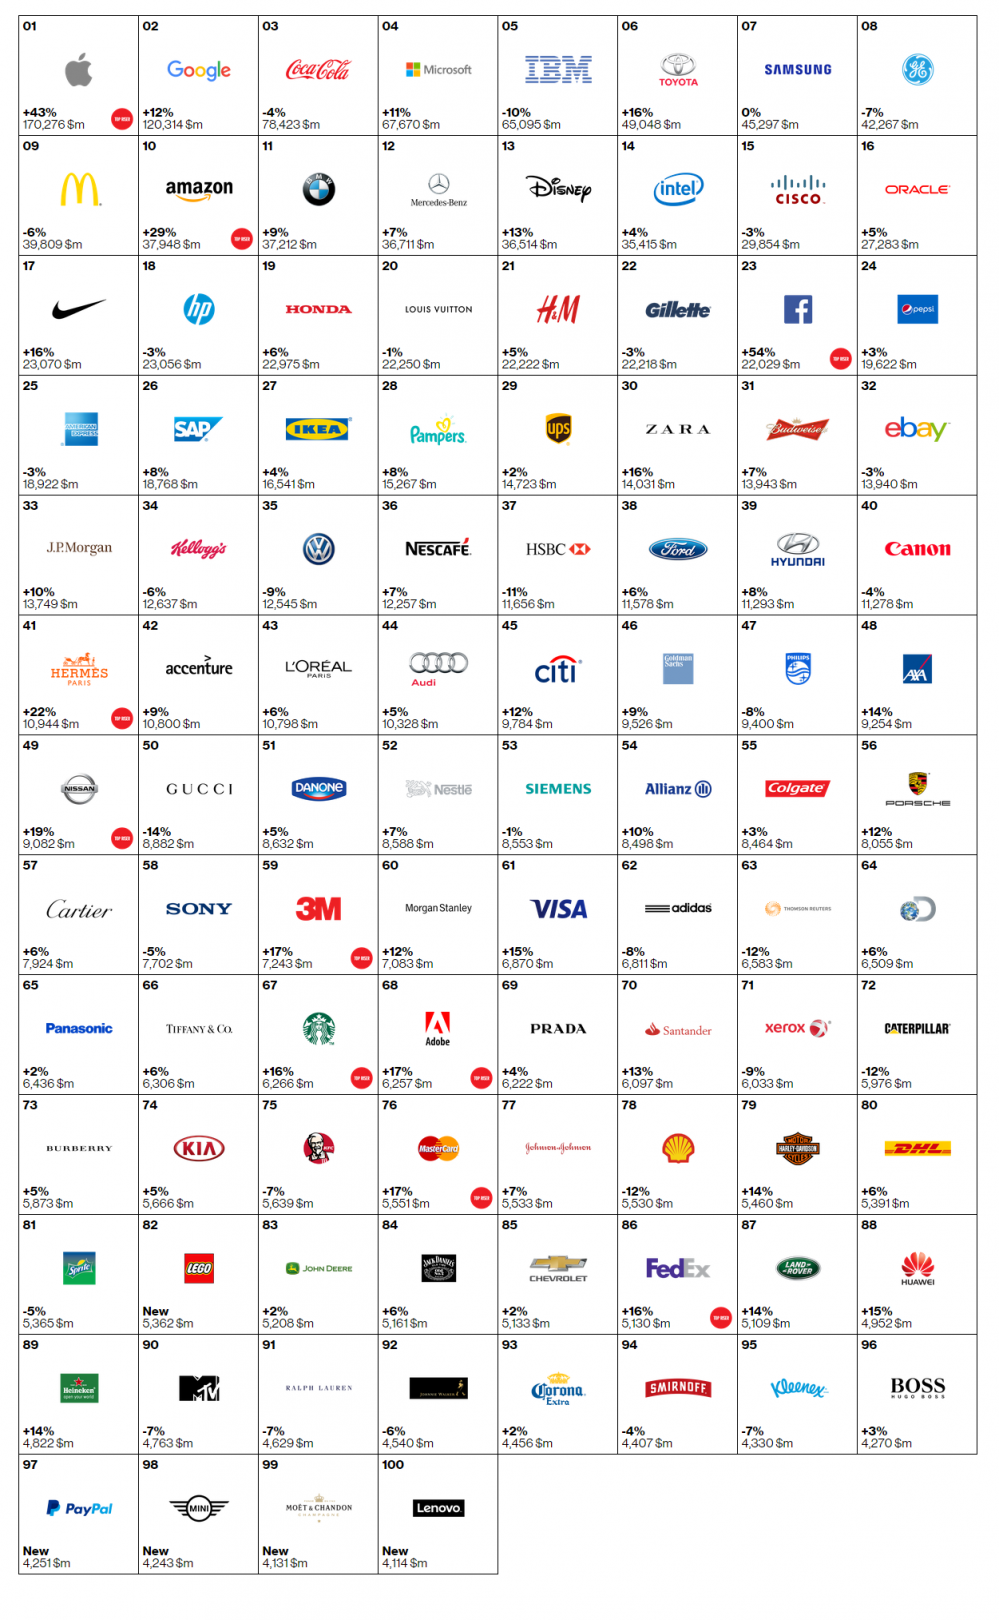 FireShot Capture 19 - Rankings - 2015 - Best Global Brands -_ - http___interbrand.com_best-brands_.png